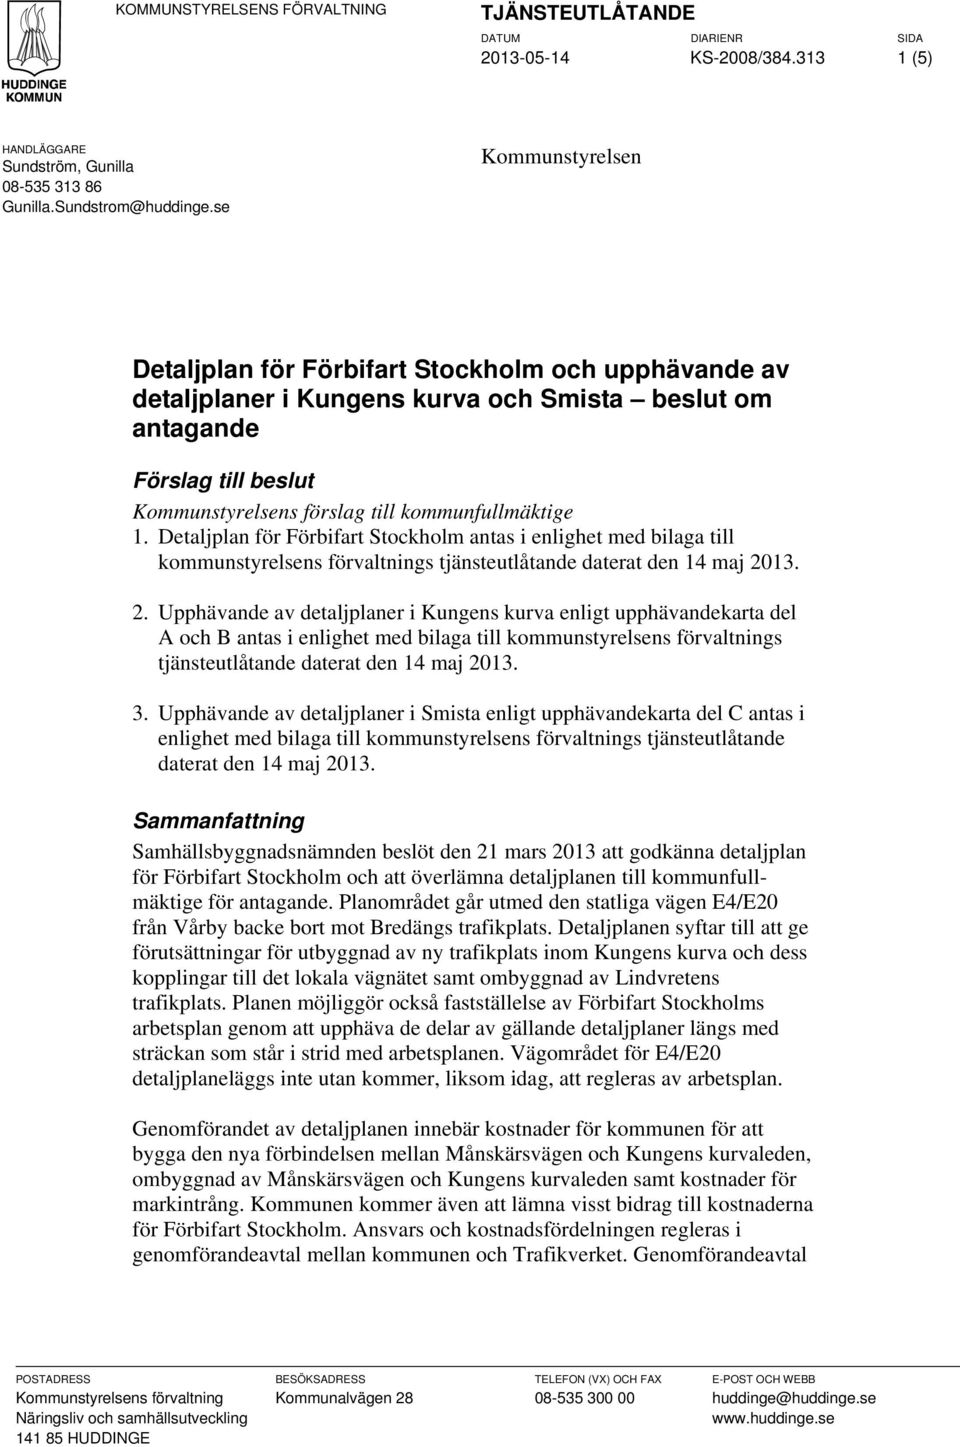 1. Detaljplan för Förbifart Stockholm antas i enlighet med bilaga till kommunstyrelsens förvaltnings tjänsteutlåtande daterat den 14 maj 20